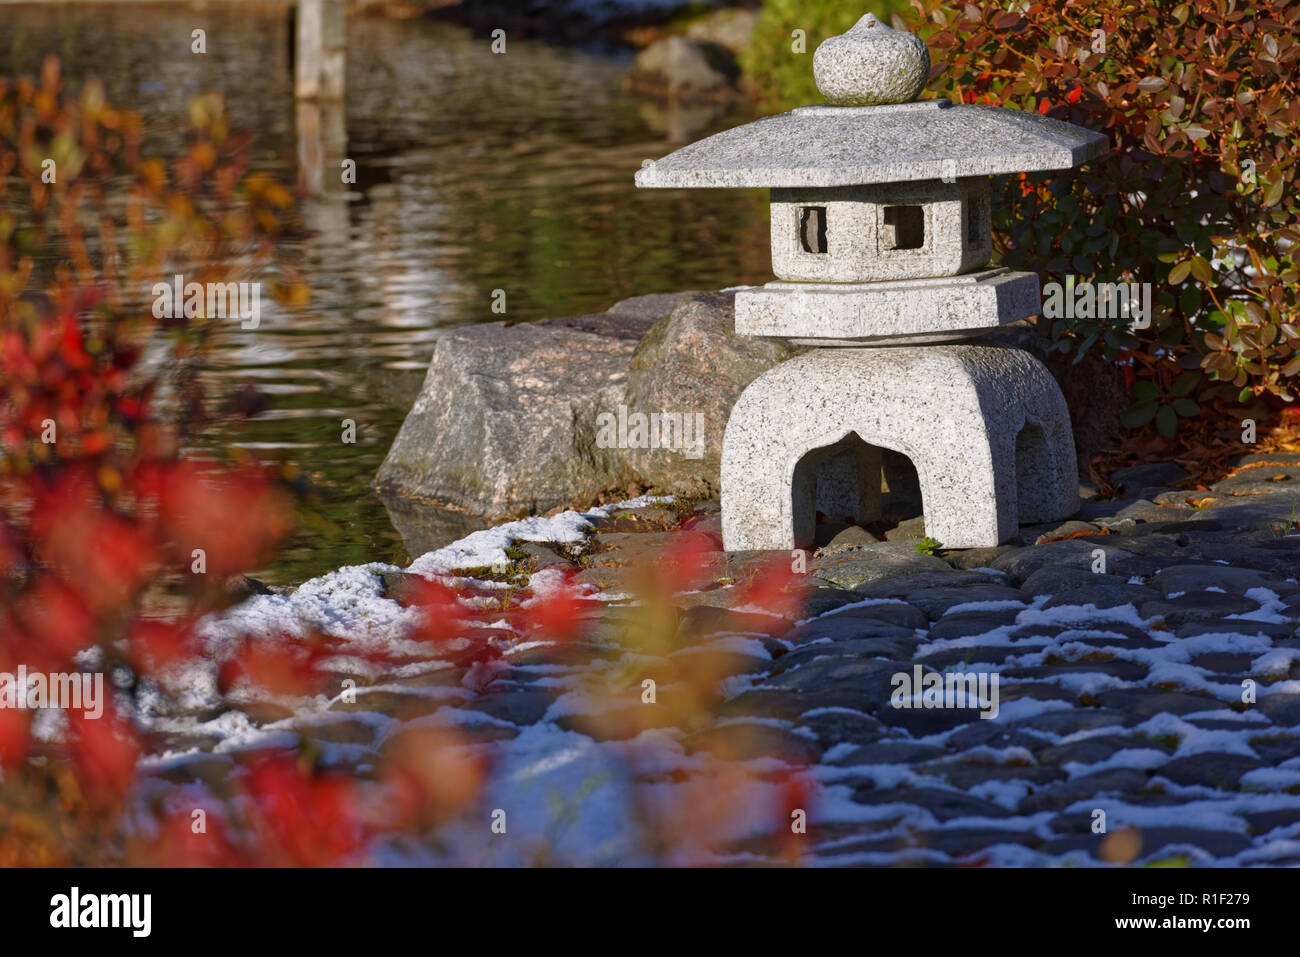 Stone Japanese lantern in autumn garden Stock Photo